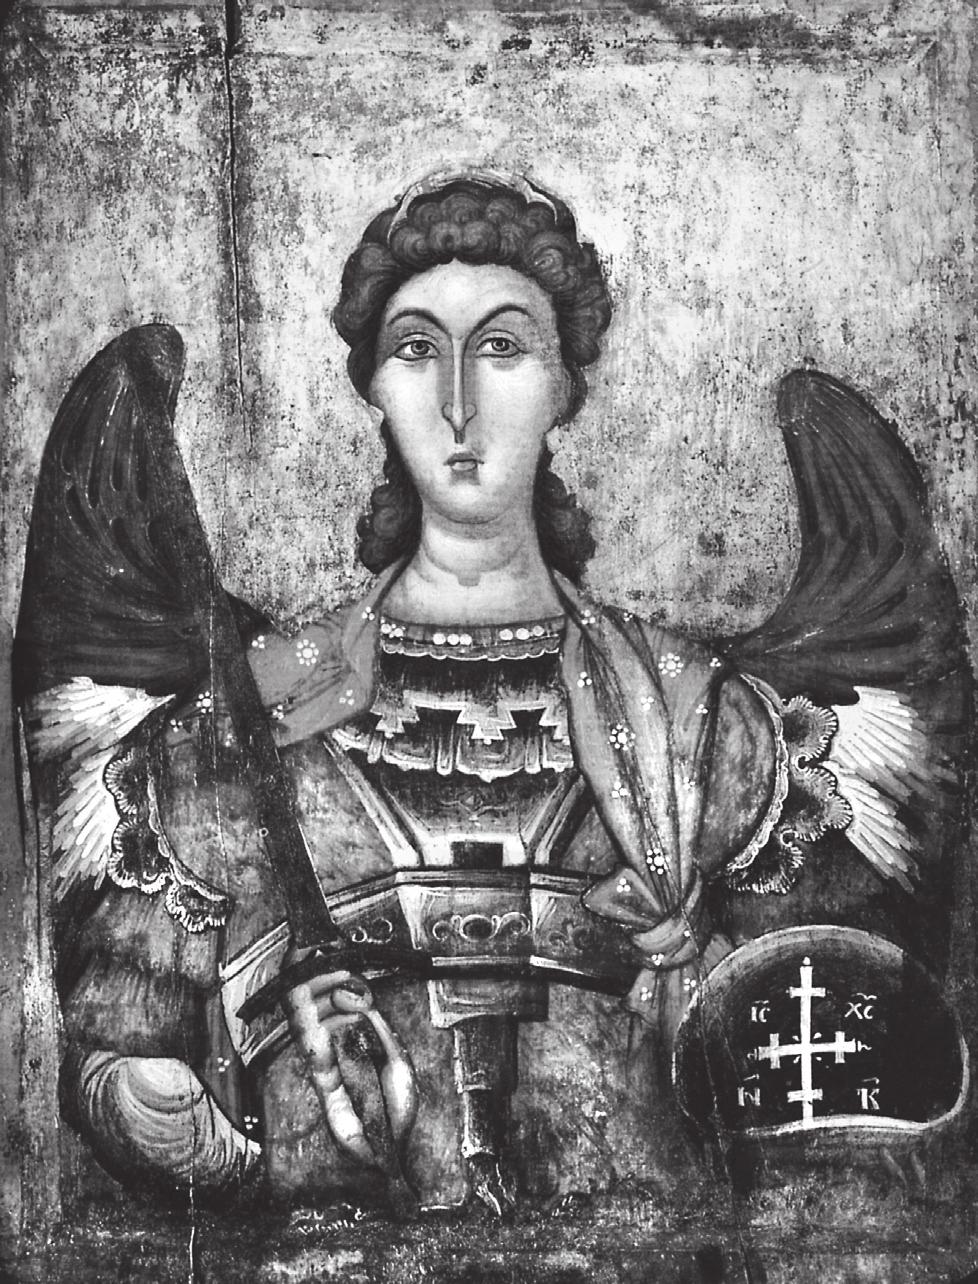 ΕΙΚΟΝΕΣ ΤΗΣ «ΣΧΟΛΗΣ» ΚΑΣΤΟΡΙΑΣ βρίσκεται στο Εθνικό Μουσείο Μεσαιωνικής τέχνης στην Κορυτσά 24. Ο αρχάγγελος παριστάνεται σε προτομή, φορώντας στρατιωτική ενδυμασία.